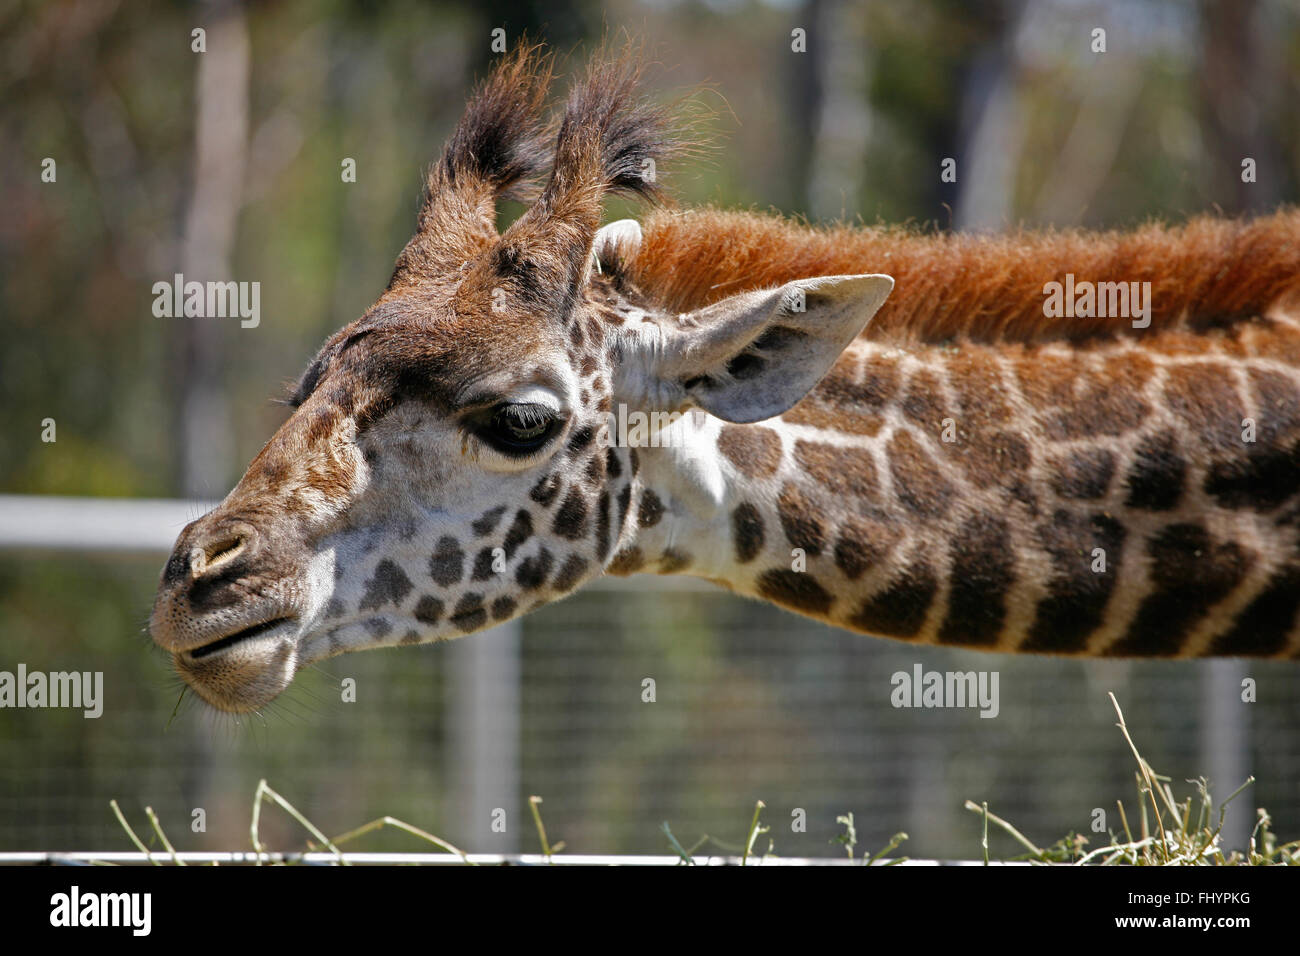 A young MASAI GIRAFFE (Giraffa camelopardalis tippelskirchi) Stock Photo